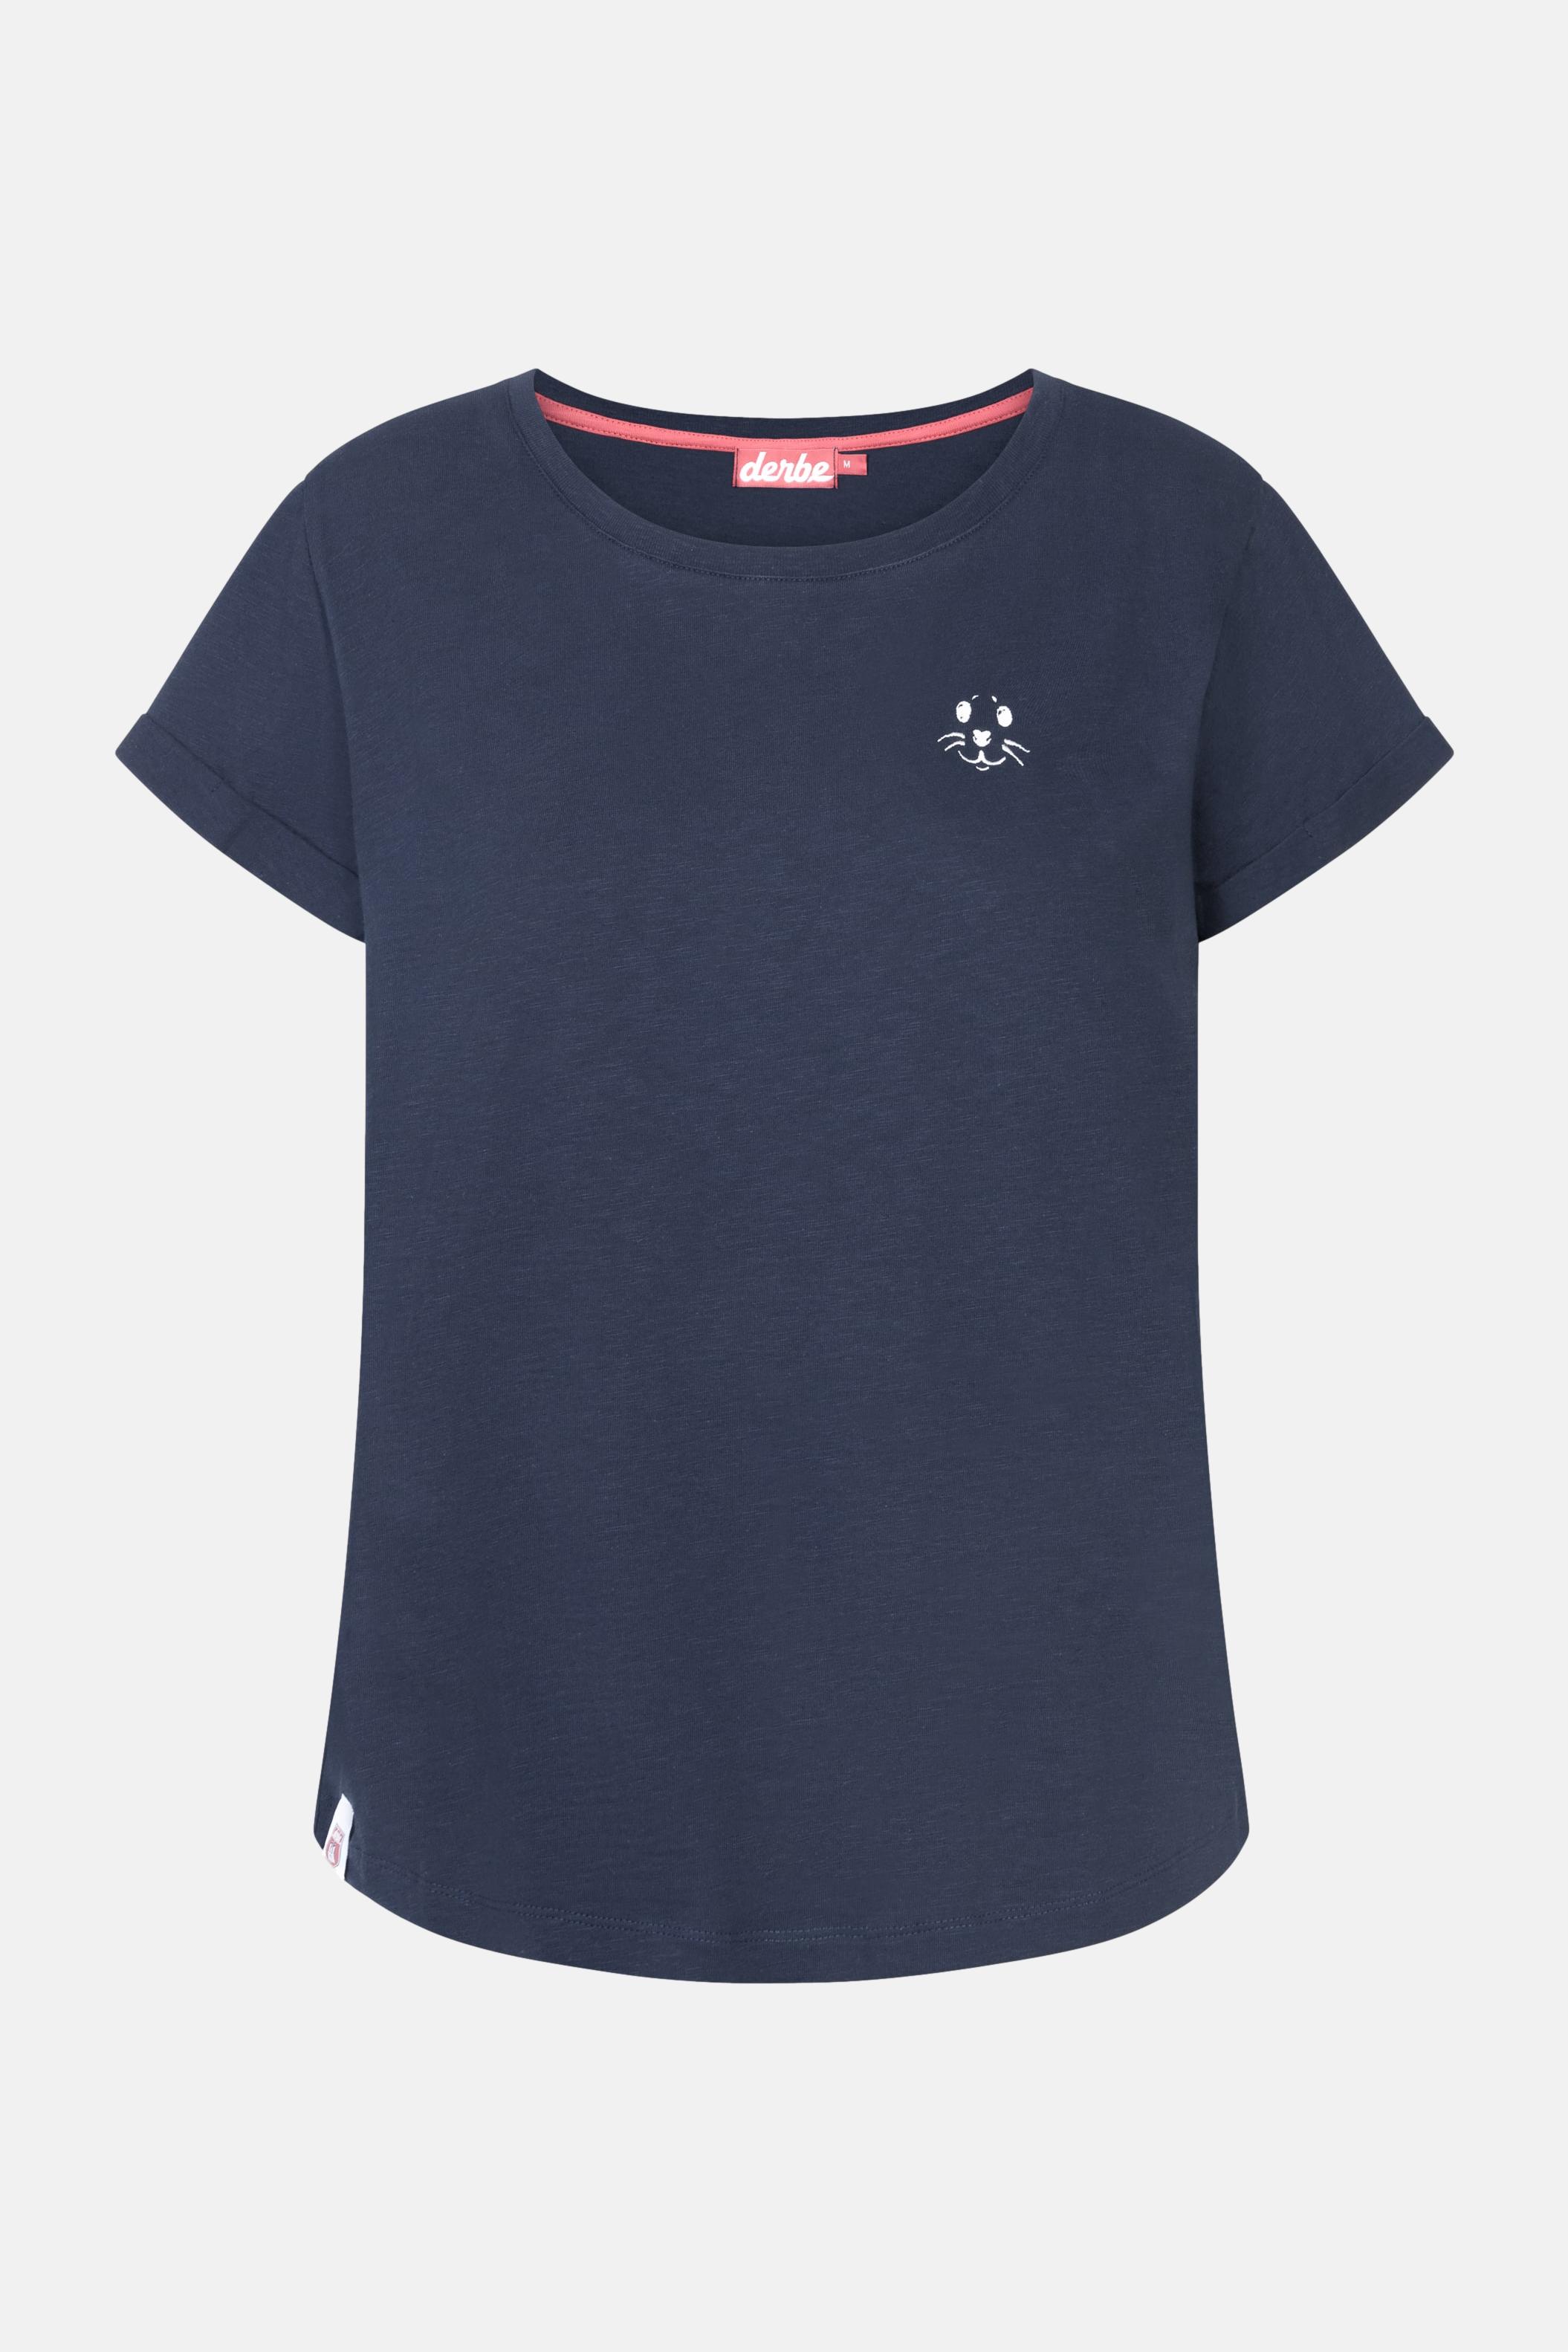 Robbenschnute Damen T-Shirt Navy Dunkelblau |